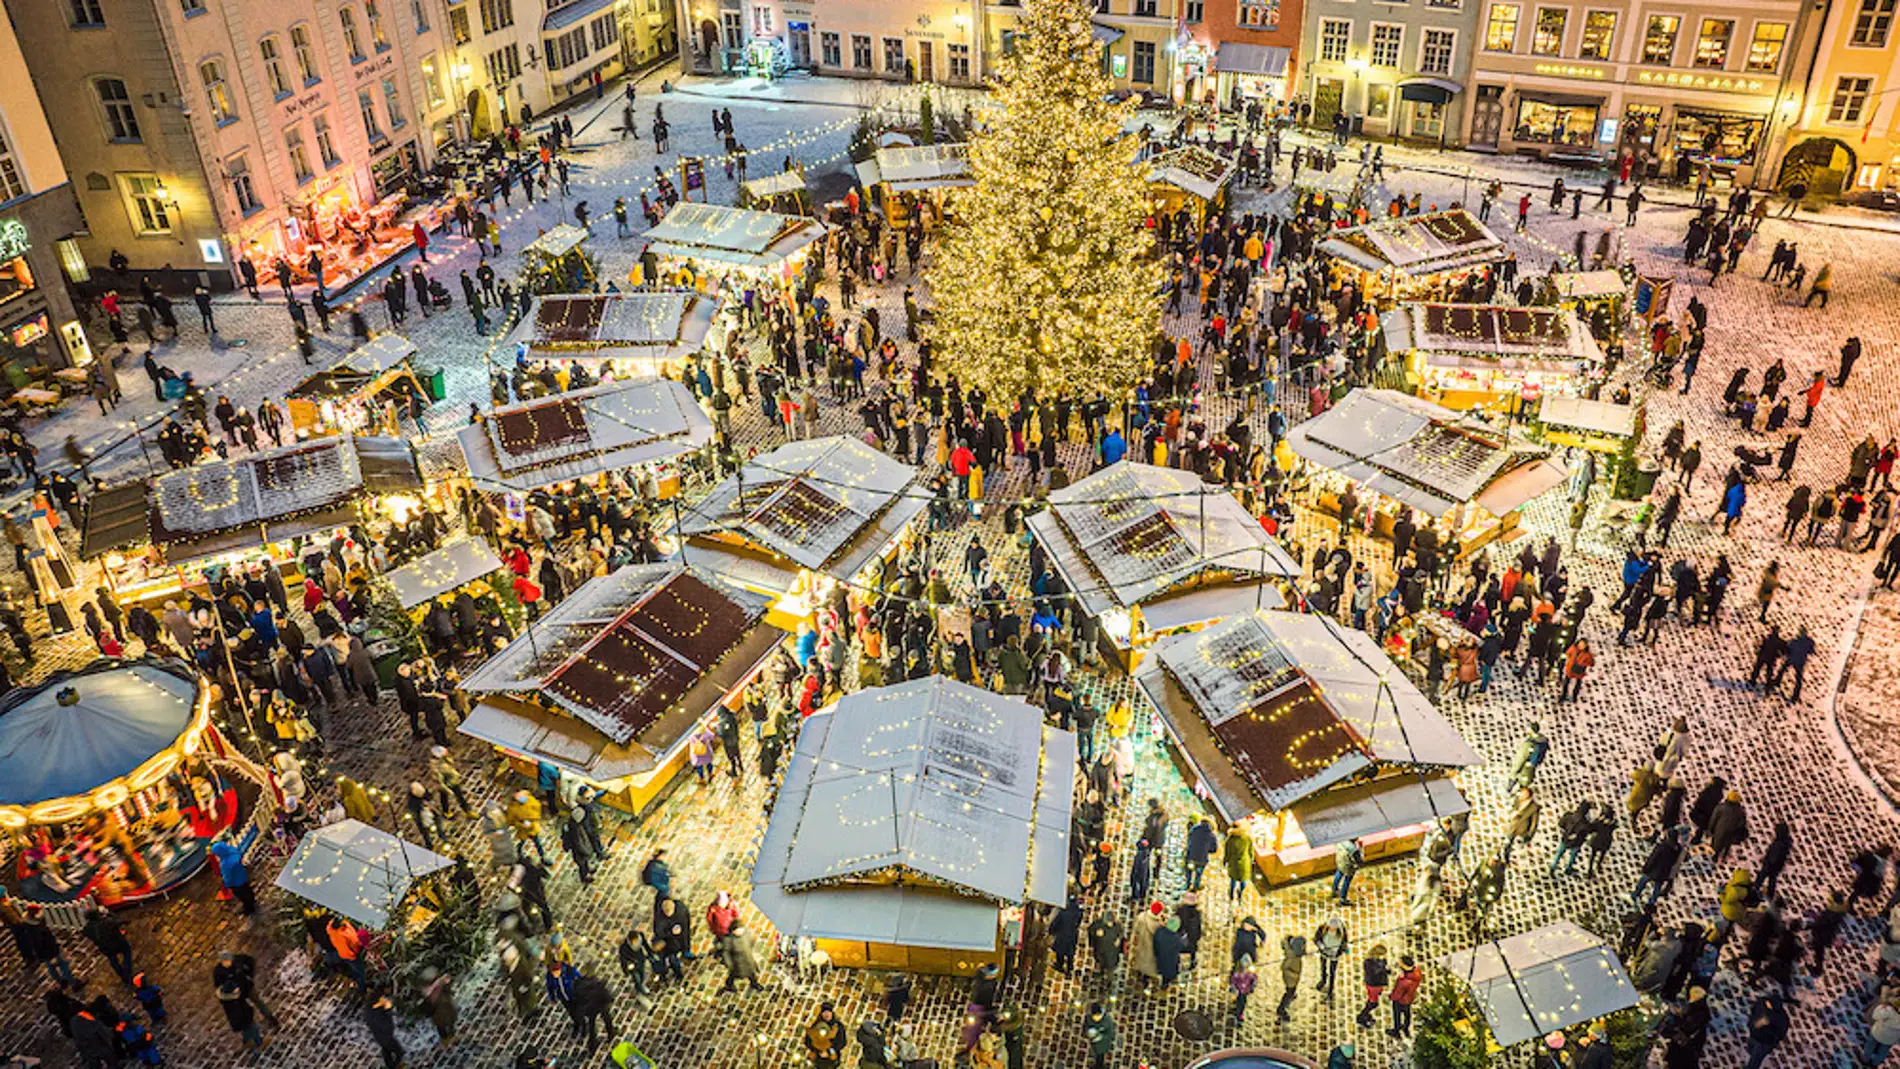 ¿Sabías que Tallin, capital de Estonia, celebra su Mercado de Navidad desde el S.XV?